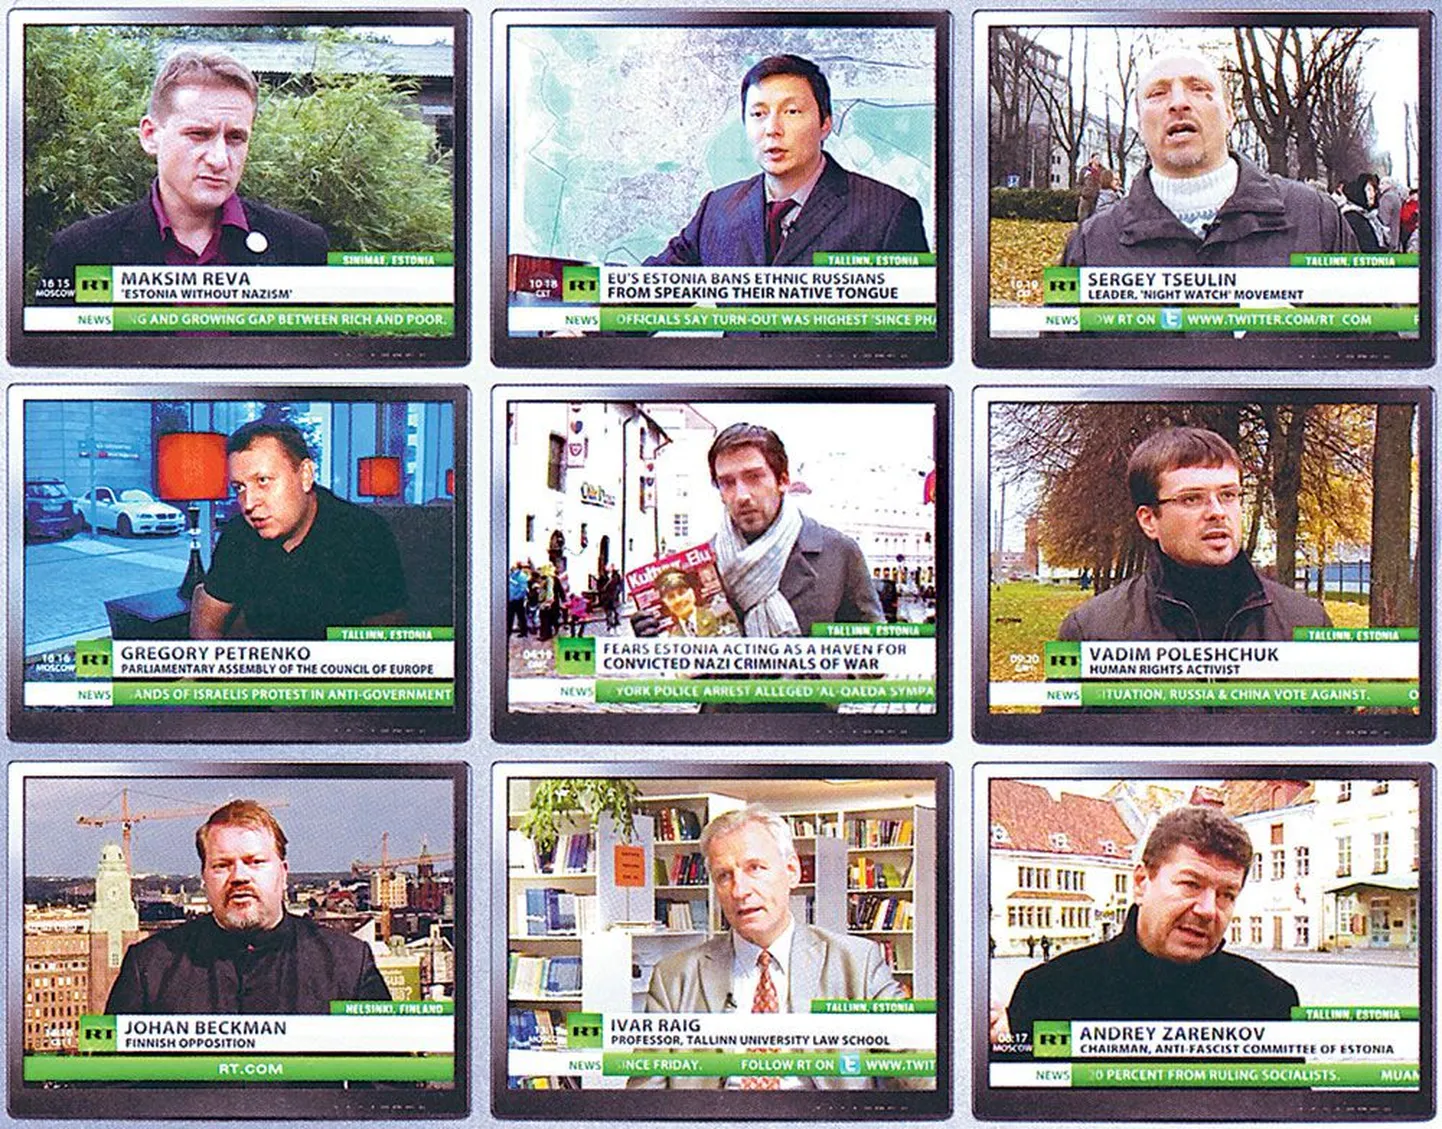 Kapo aastaraamat toob väljavõtteid telekanali RT Eestist rääkivatest lugudest».